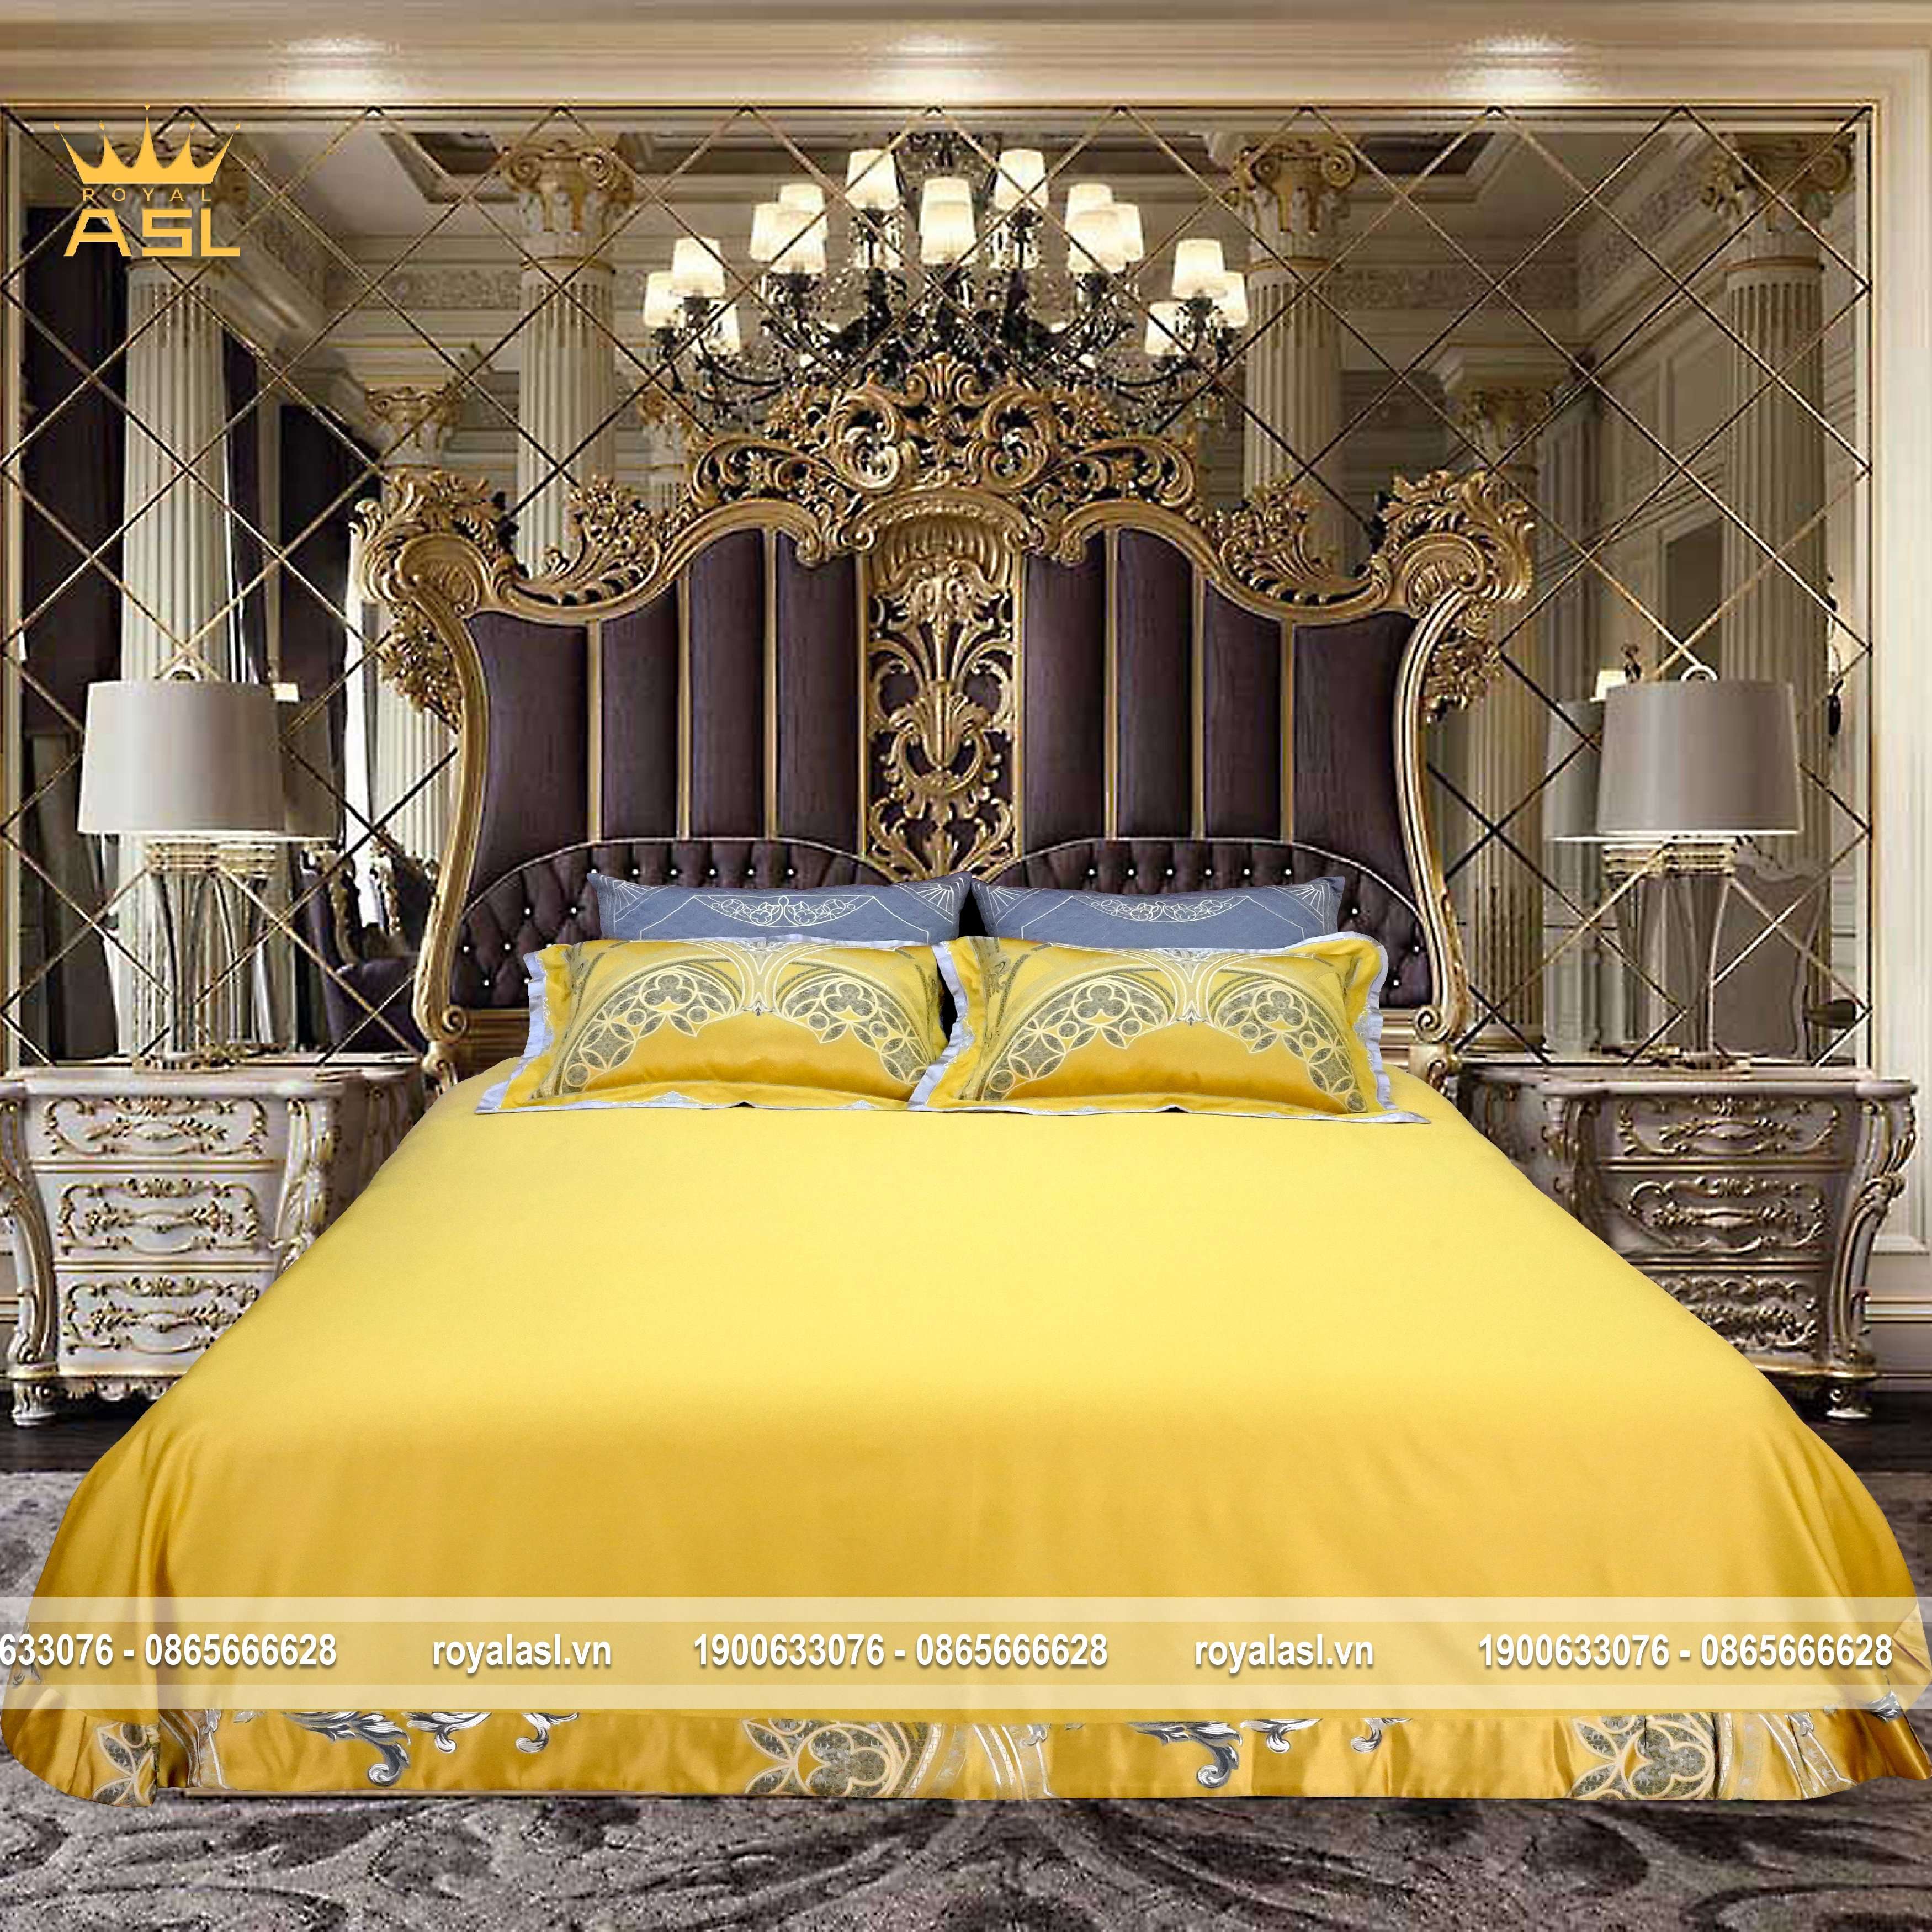 Bộ Chăn Ra Gối 6 món Satin Gấm Lụa Royal Gold phong cách Hoàng gia- Họa Tiết Hoa Văn Thêu Cách Điệu-Queen Size –Màu Vàng Xám -DR0113